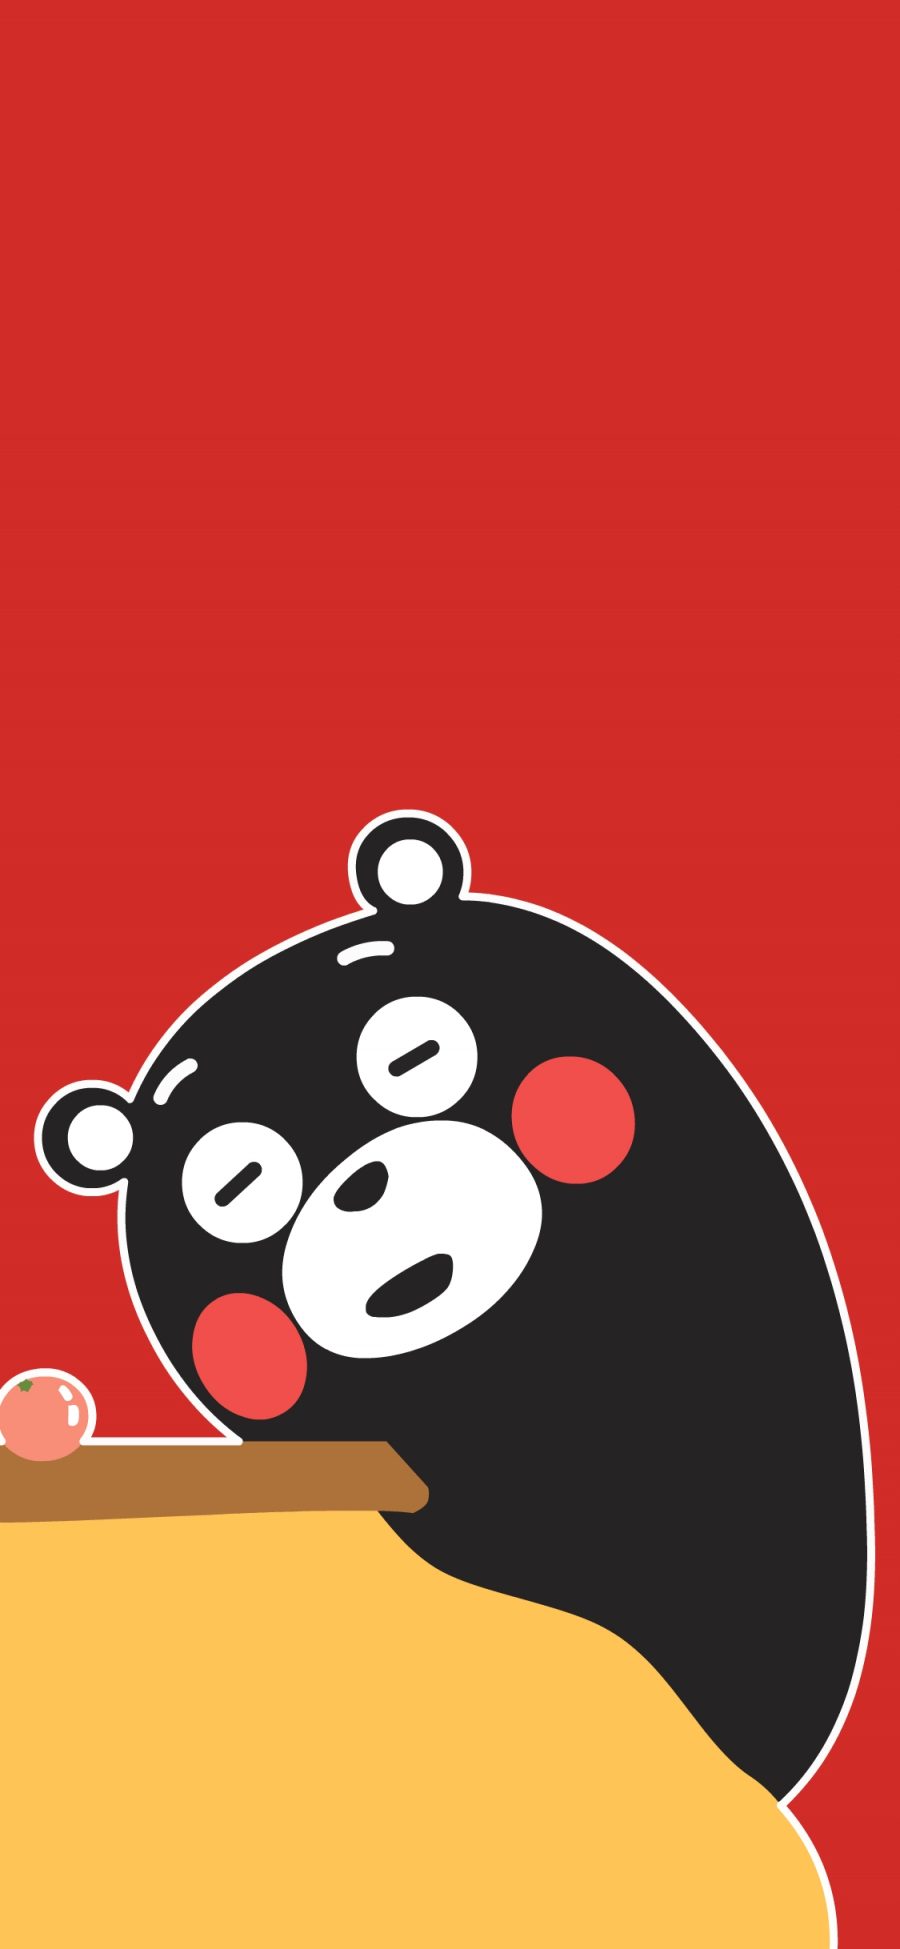 [2436×1125]熊本熊 红色 日本 可爱 卡通 苹果手机动漫壁纸图片